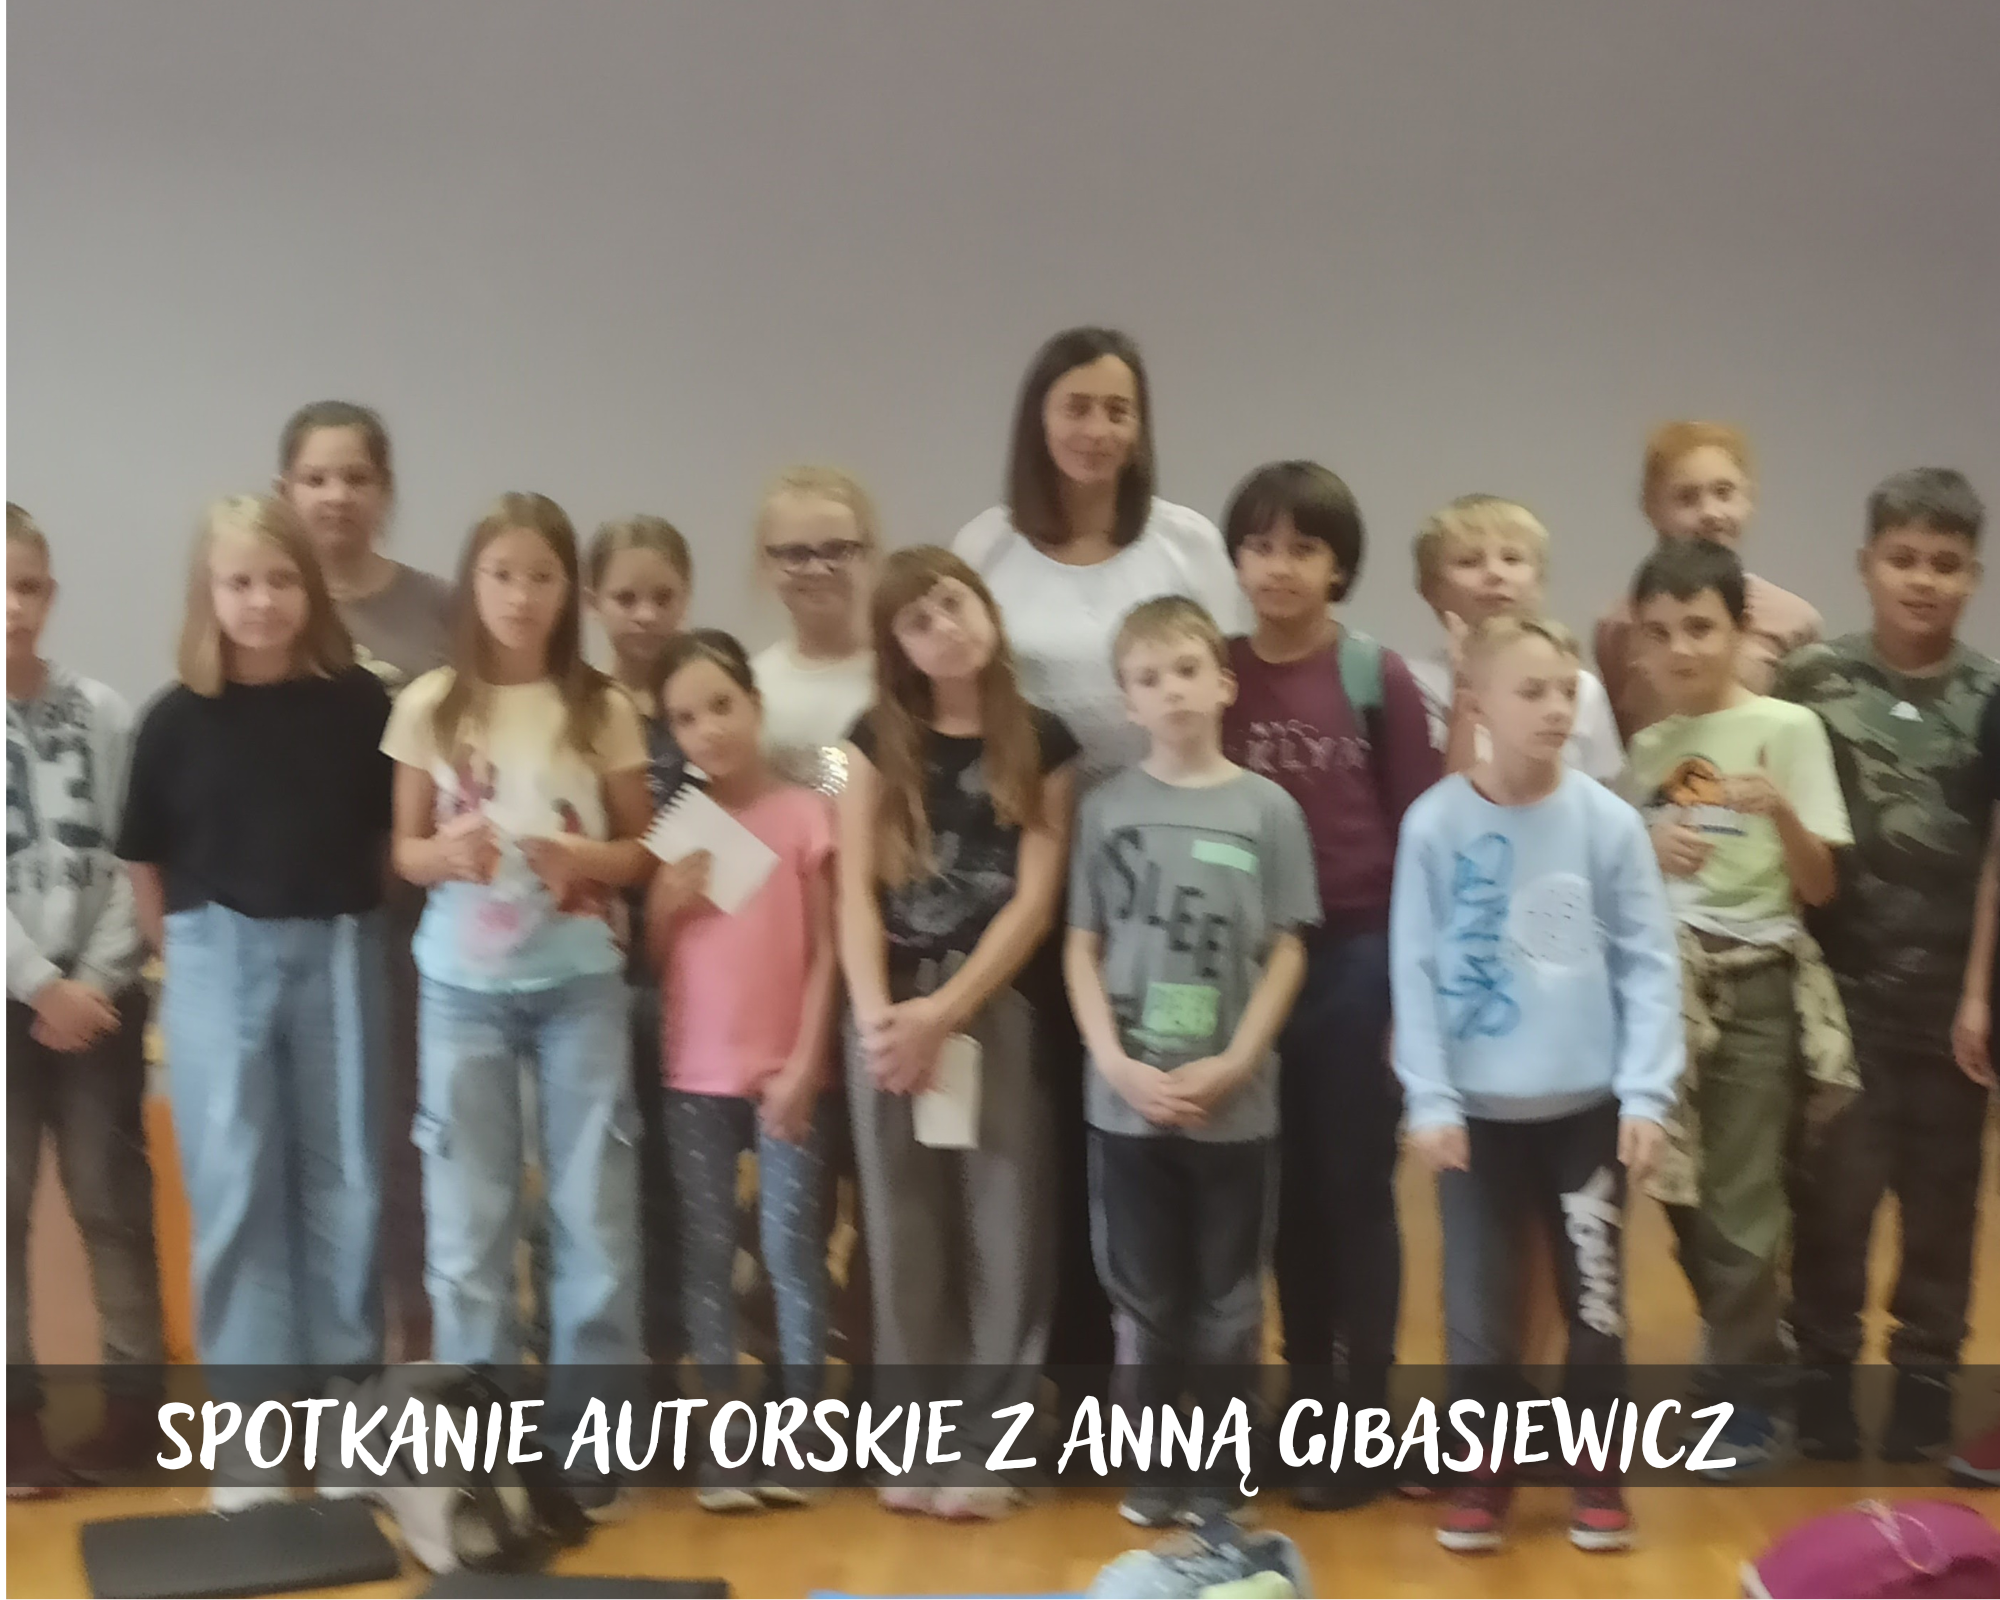 Spotkanie autorskie z Anną Gibasiewicz